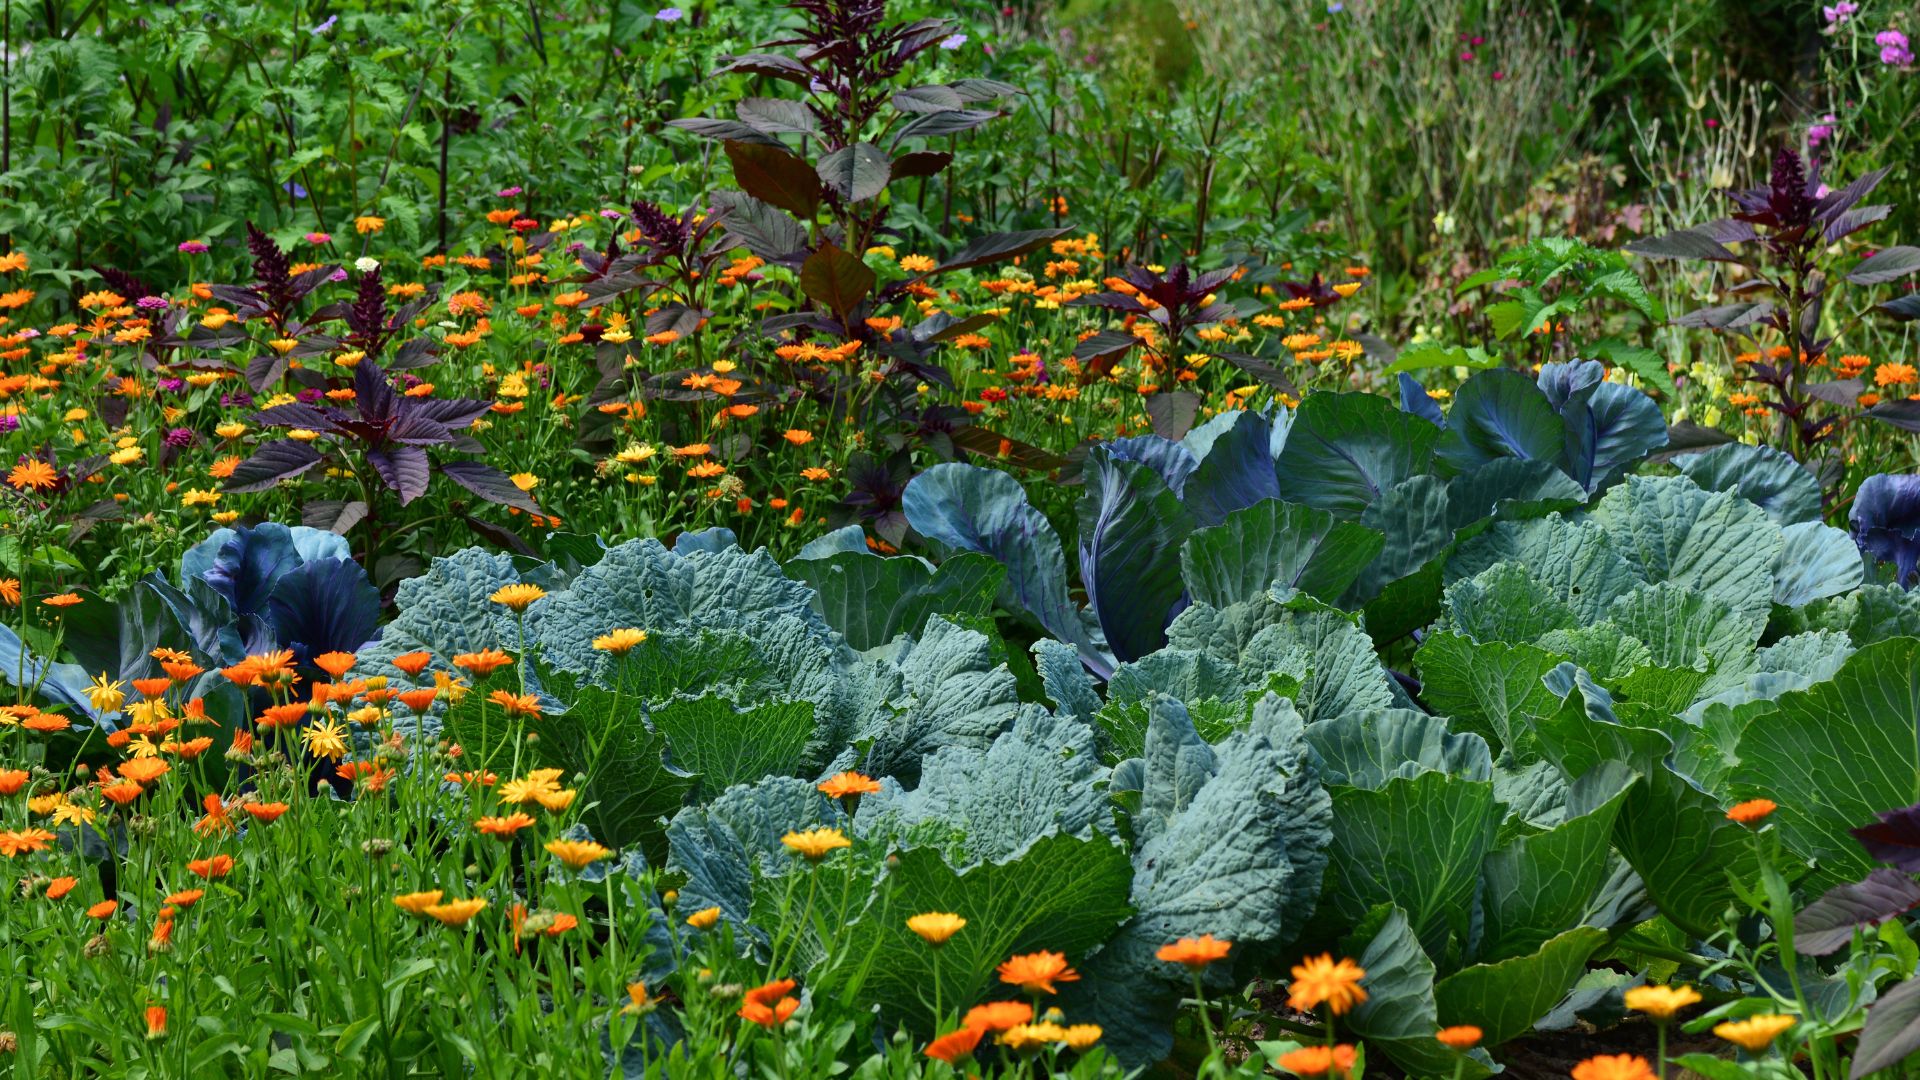 Vegetable garden with marigolds.